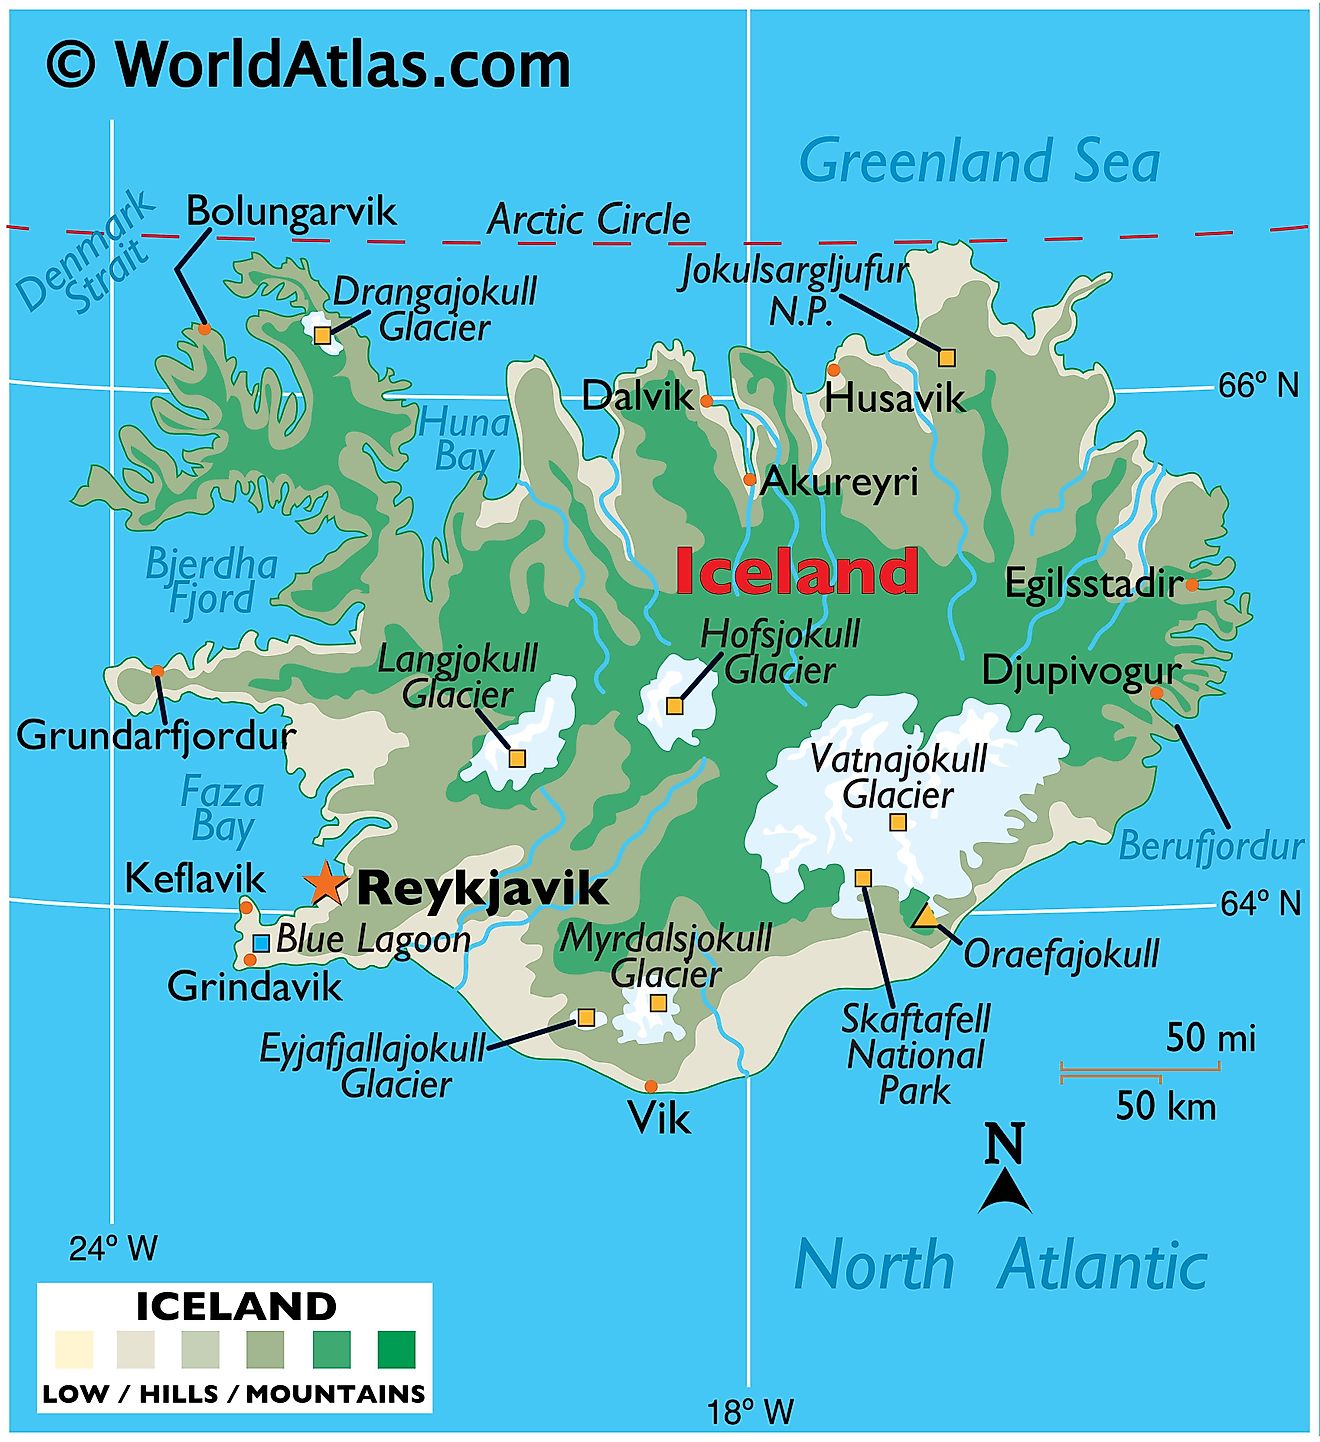 Mapa físico de Islandia que muestra terreno, montañas, puntos extremos, glaciares, fiordos, bahías, etc.